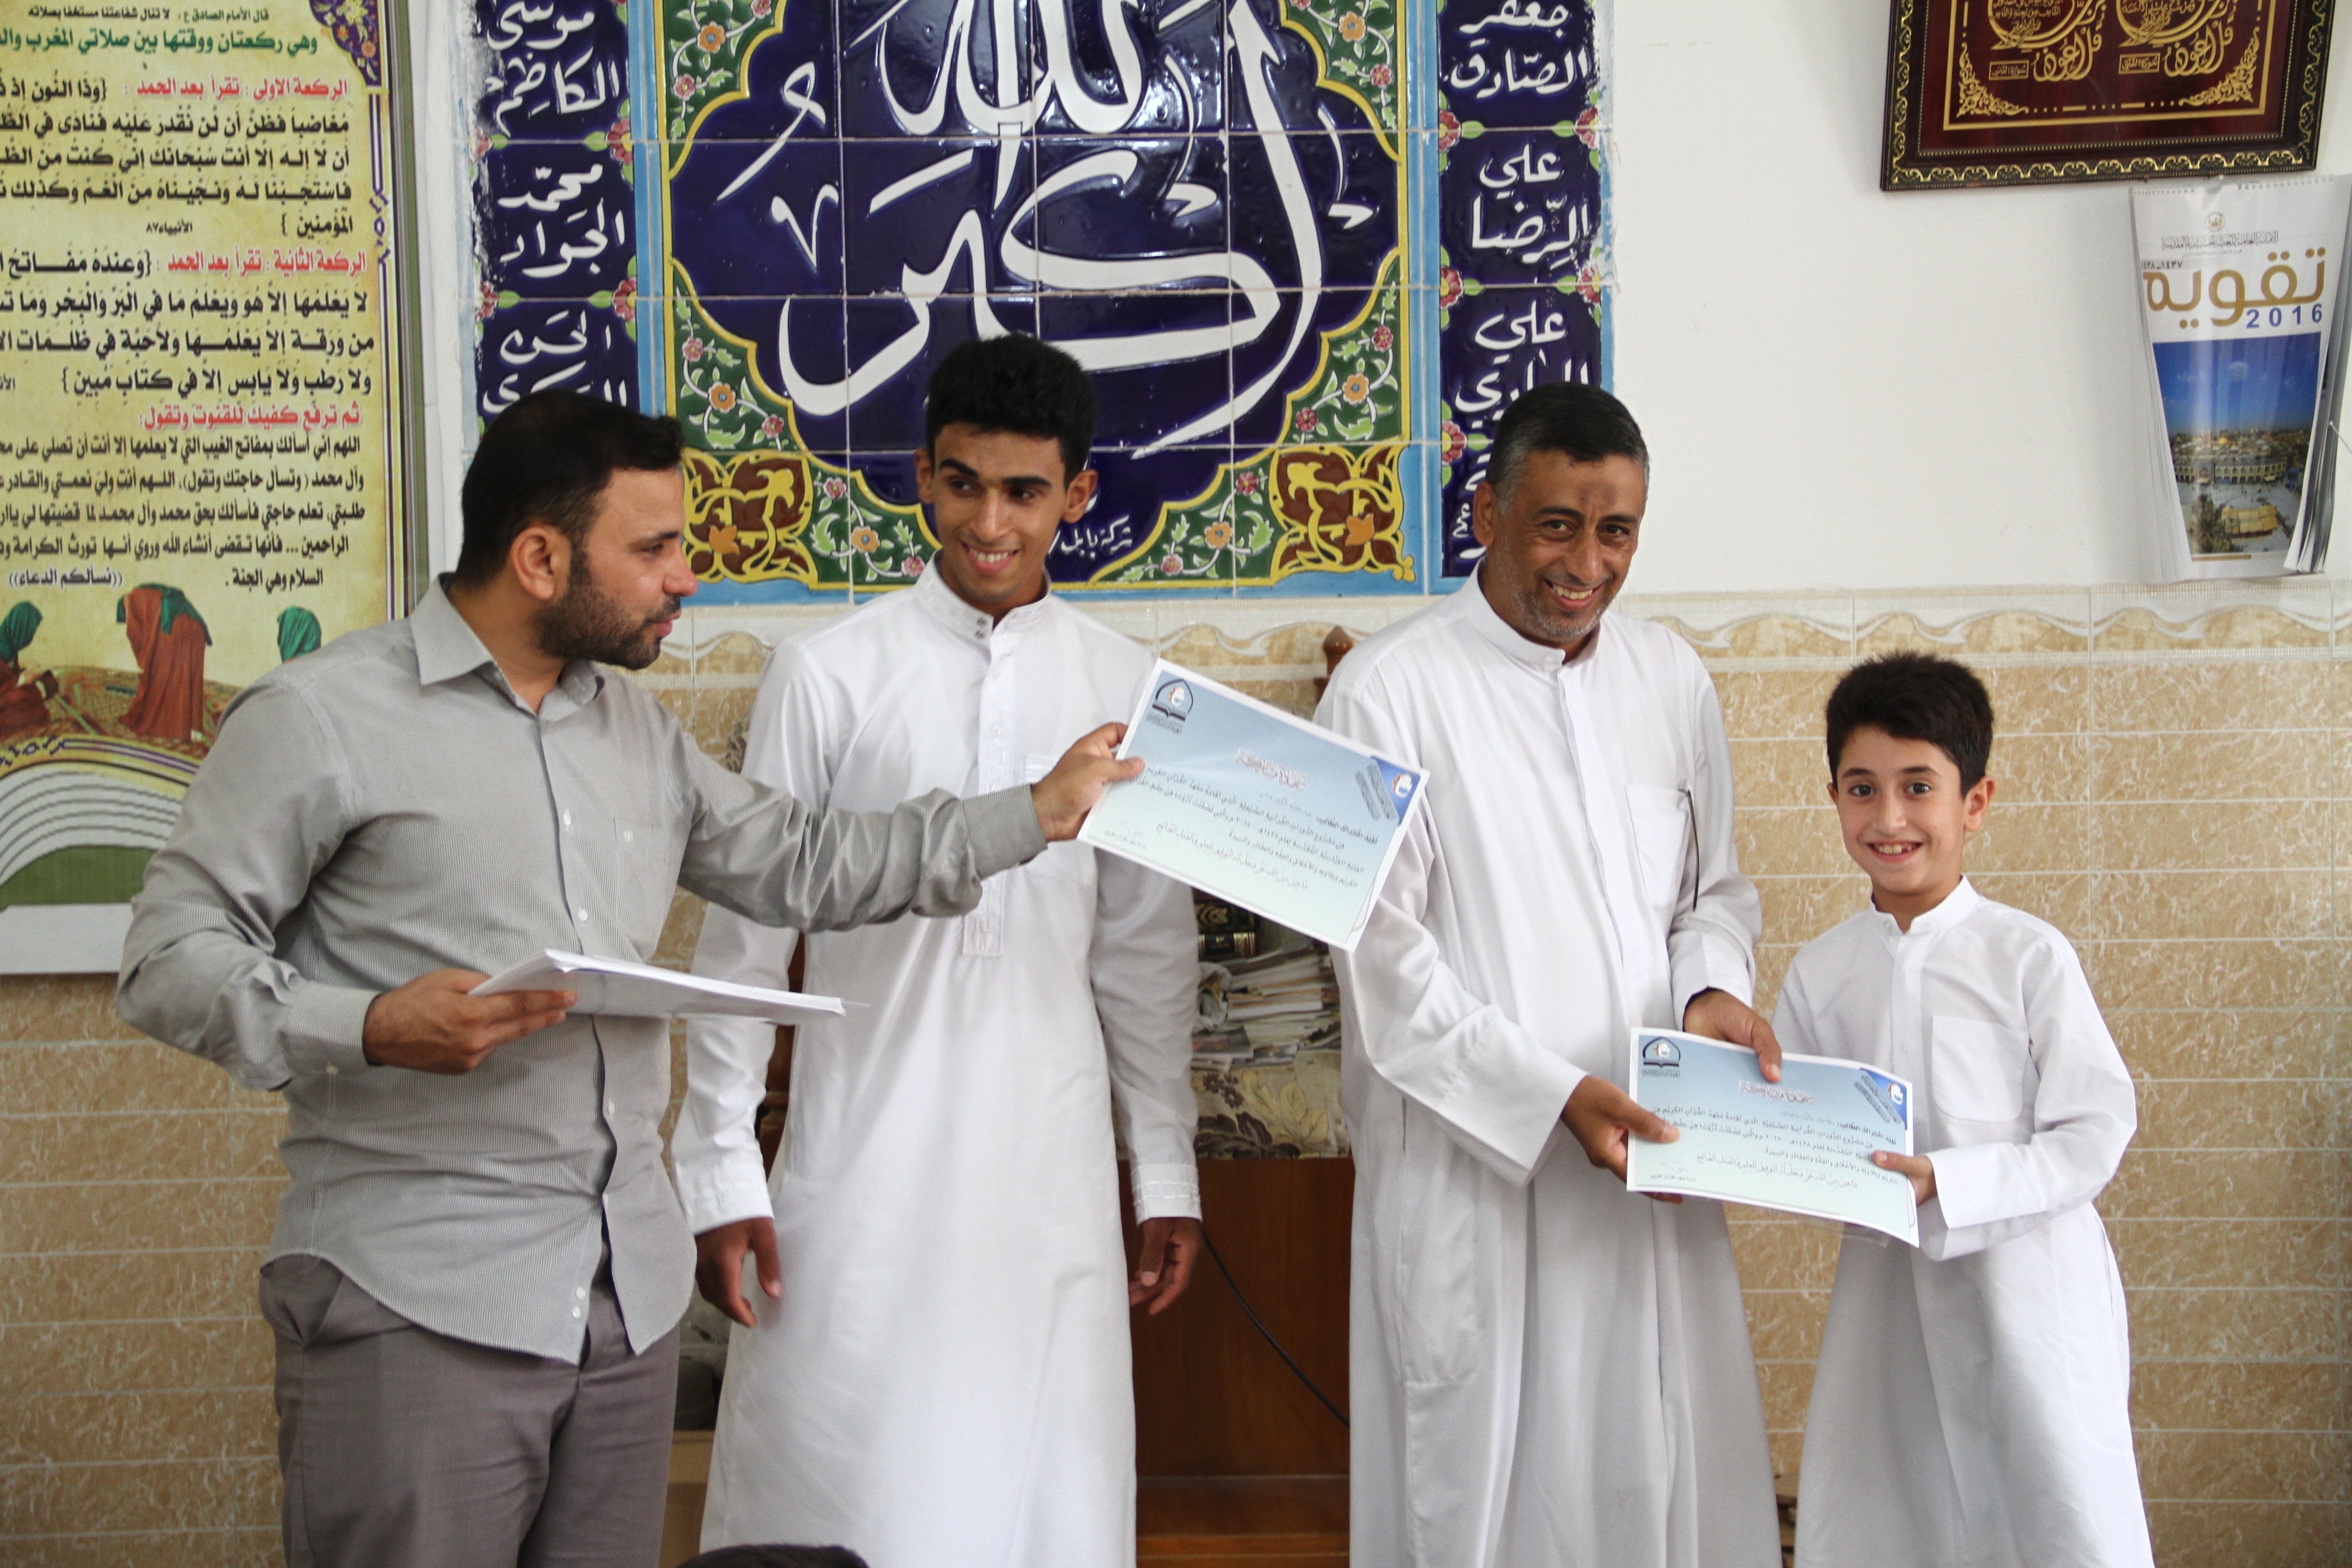 ختام مشروع الدورات الصيفية في حسينية السيدة الزينب (عليها السلام) ضمن حسينيات ومساجد كربلاء